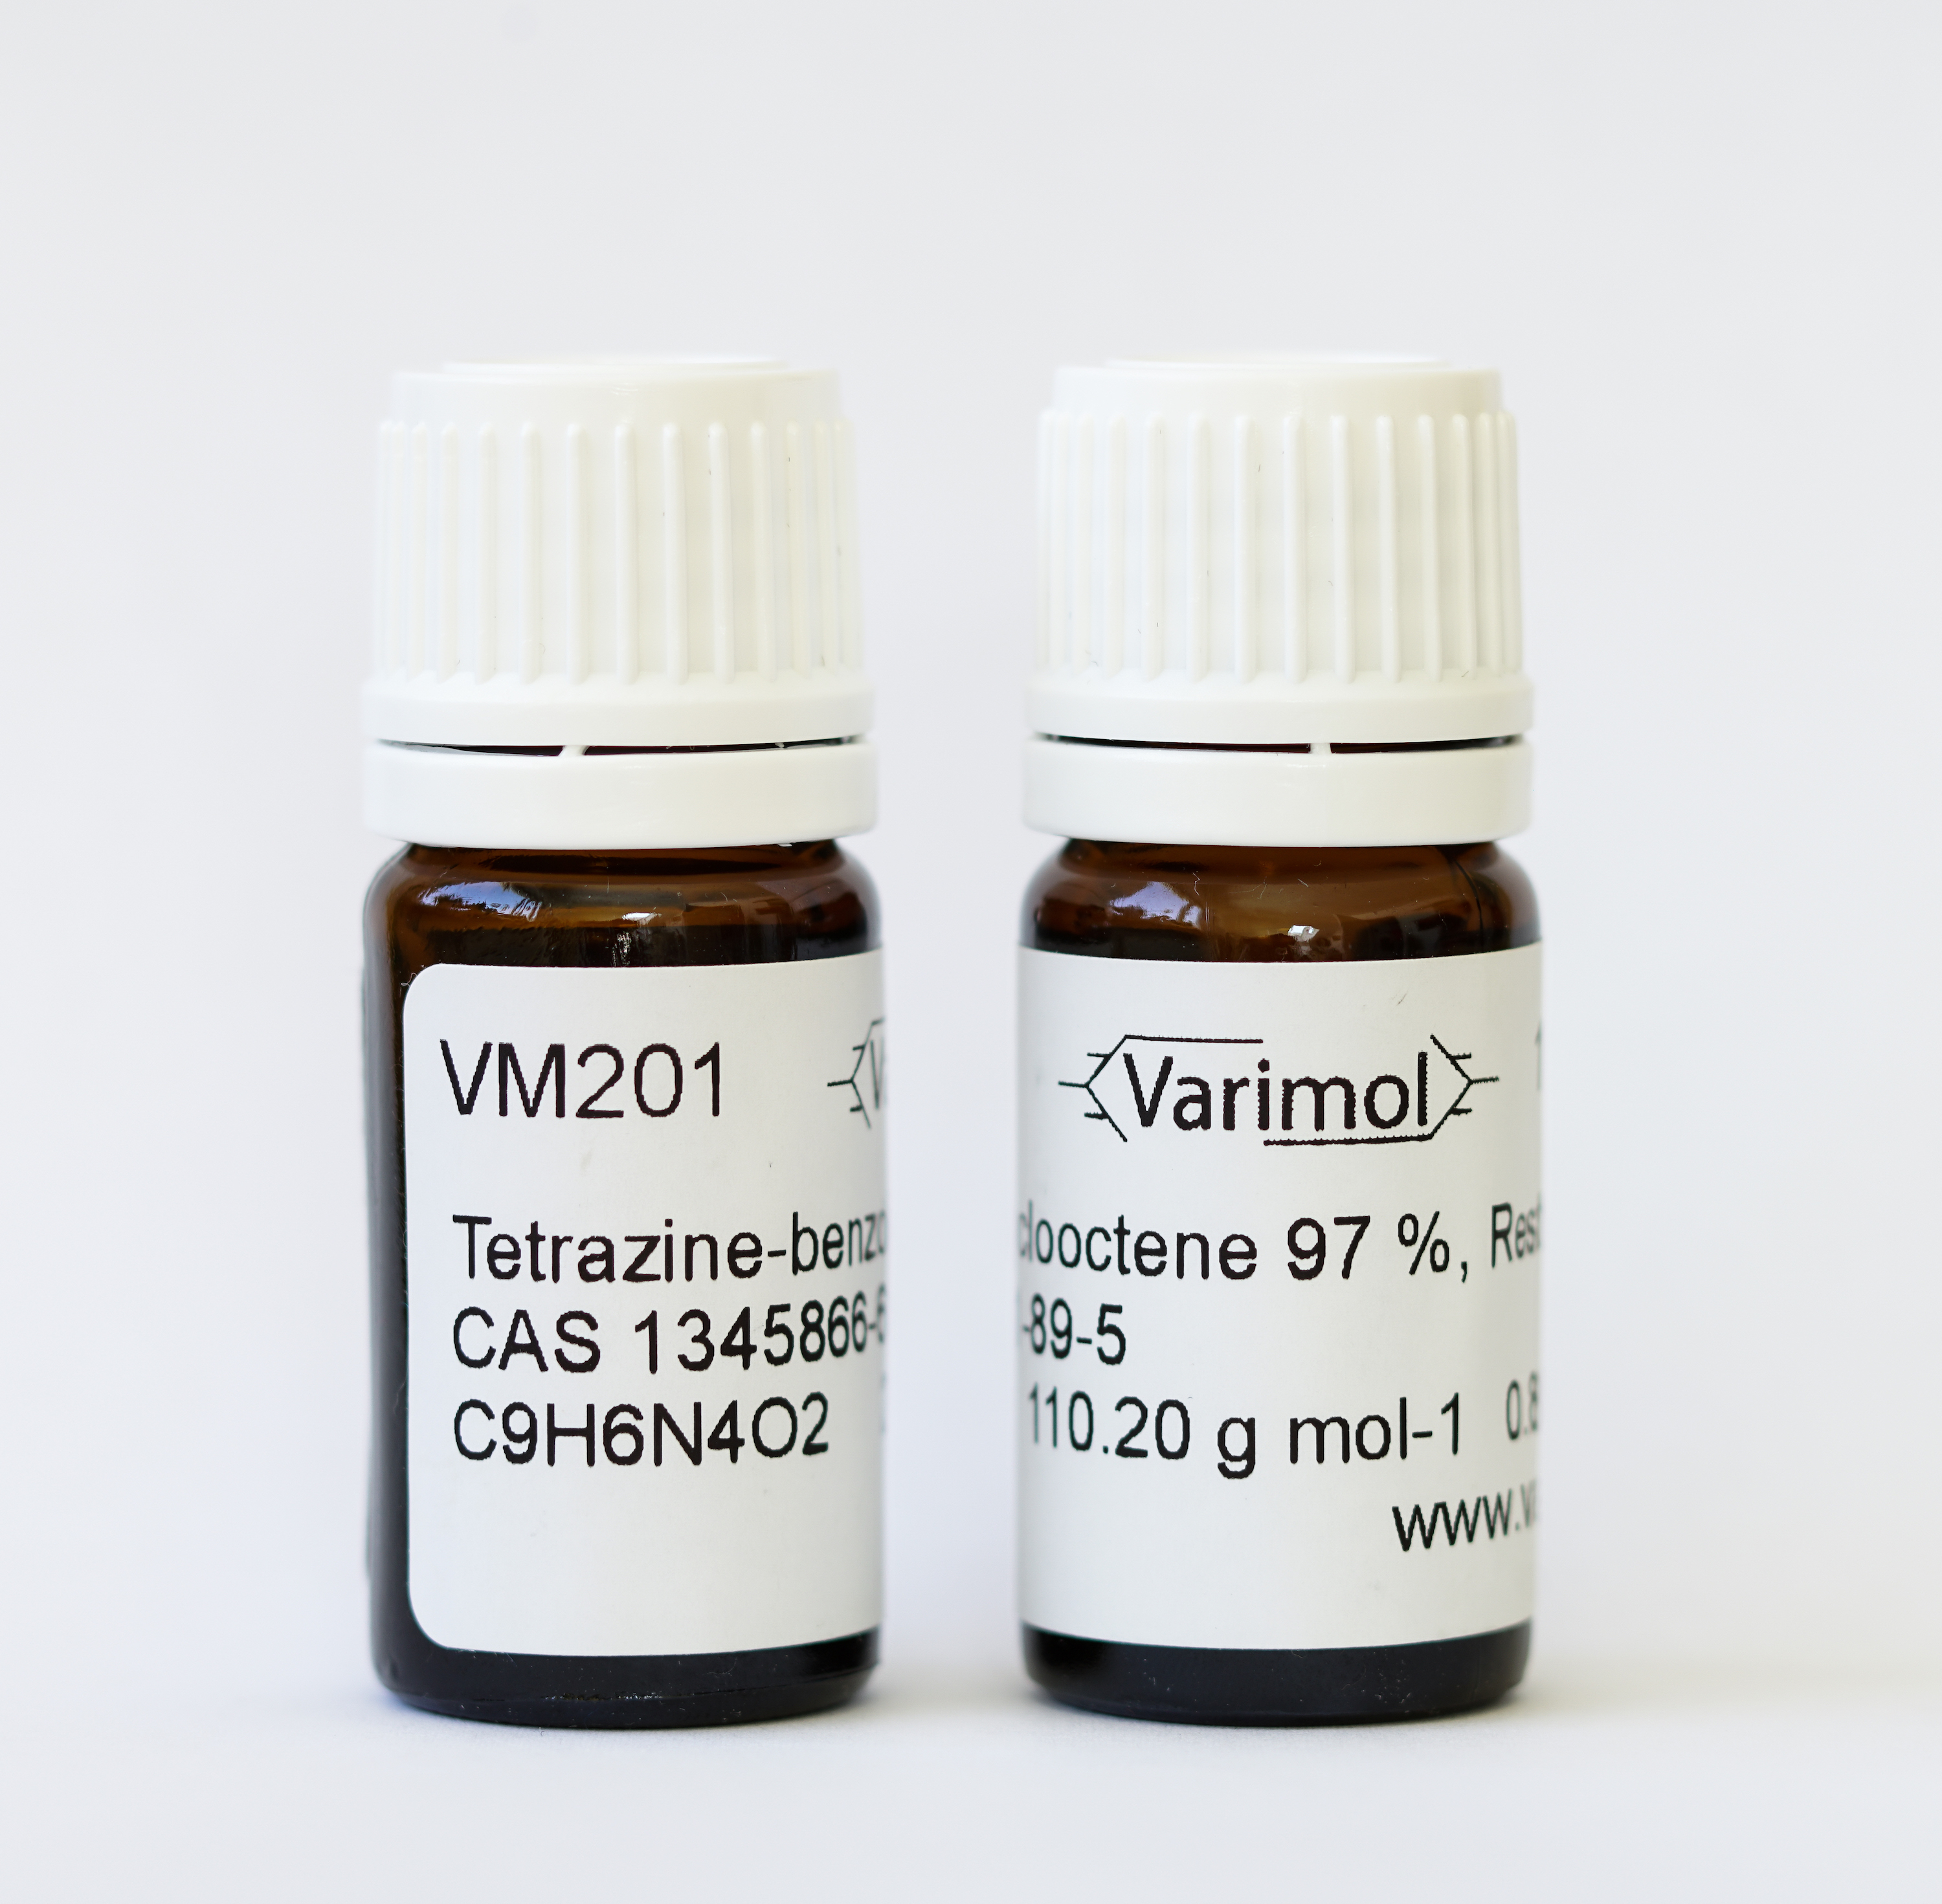 Das Bild zeigt zwei kleine braune Chemikalienfläschchen, die alle nötigen Reagenzien für ihre Anwendung für Kunden der Varimol enthalten.